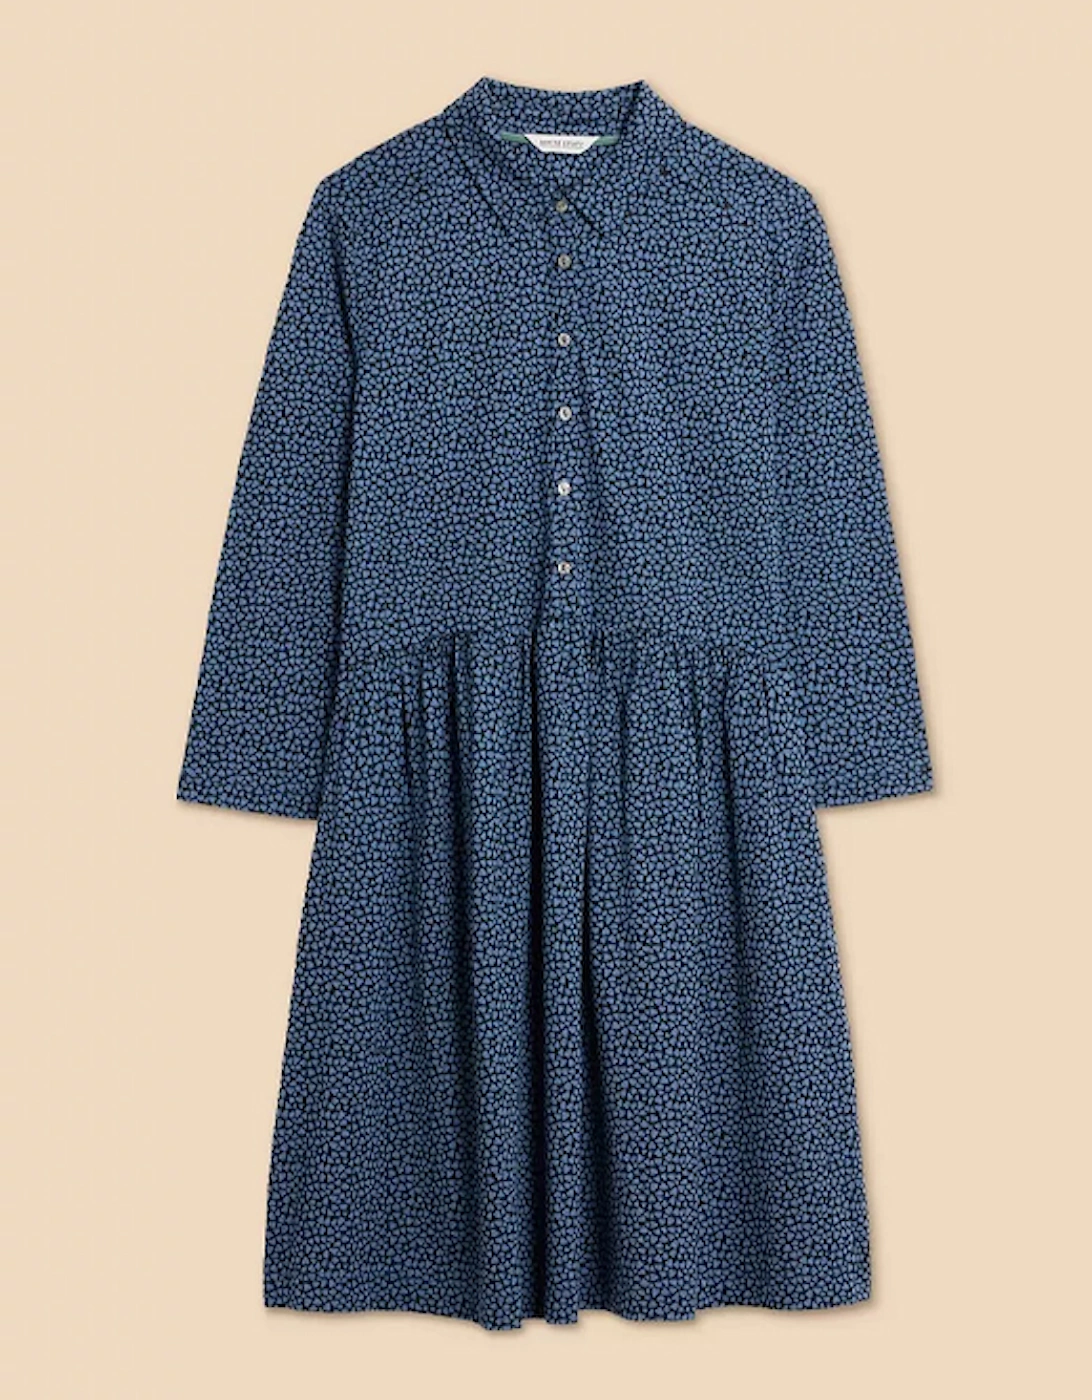 Women's Everly Jersey Shirt Dress Blue Print